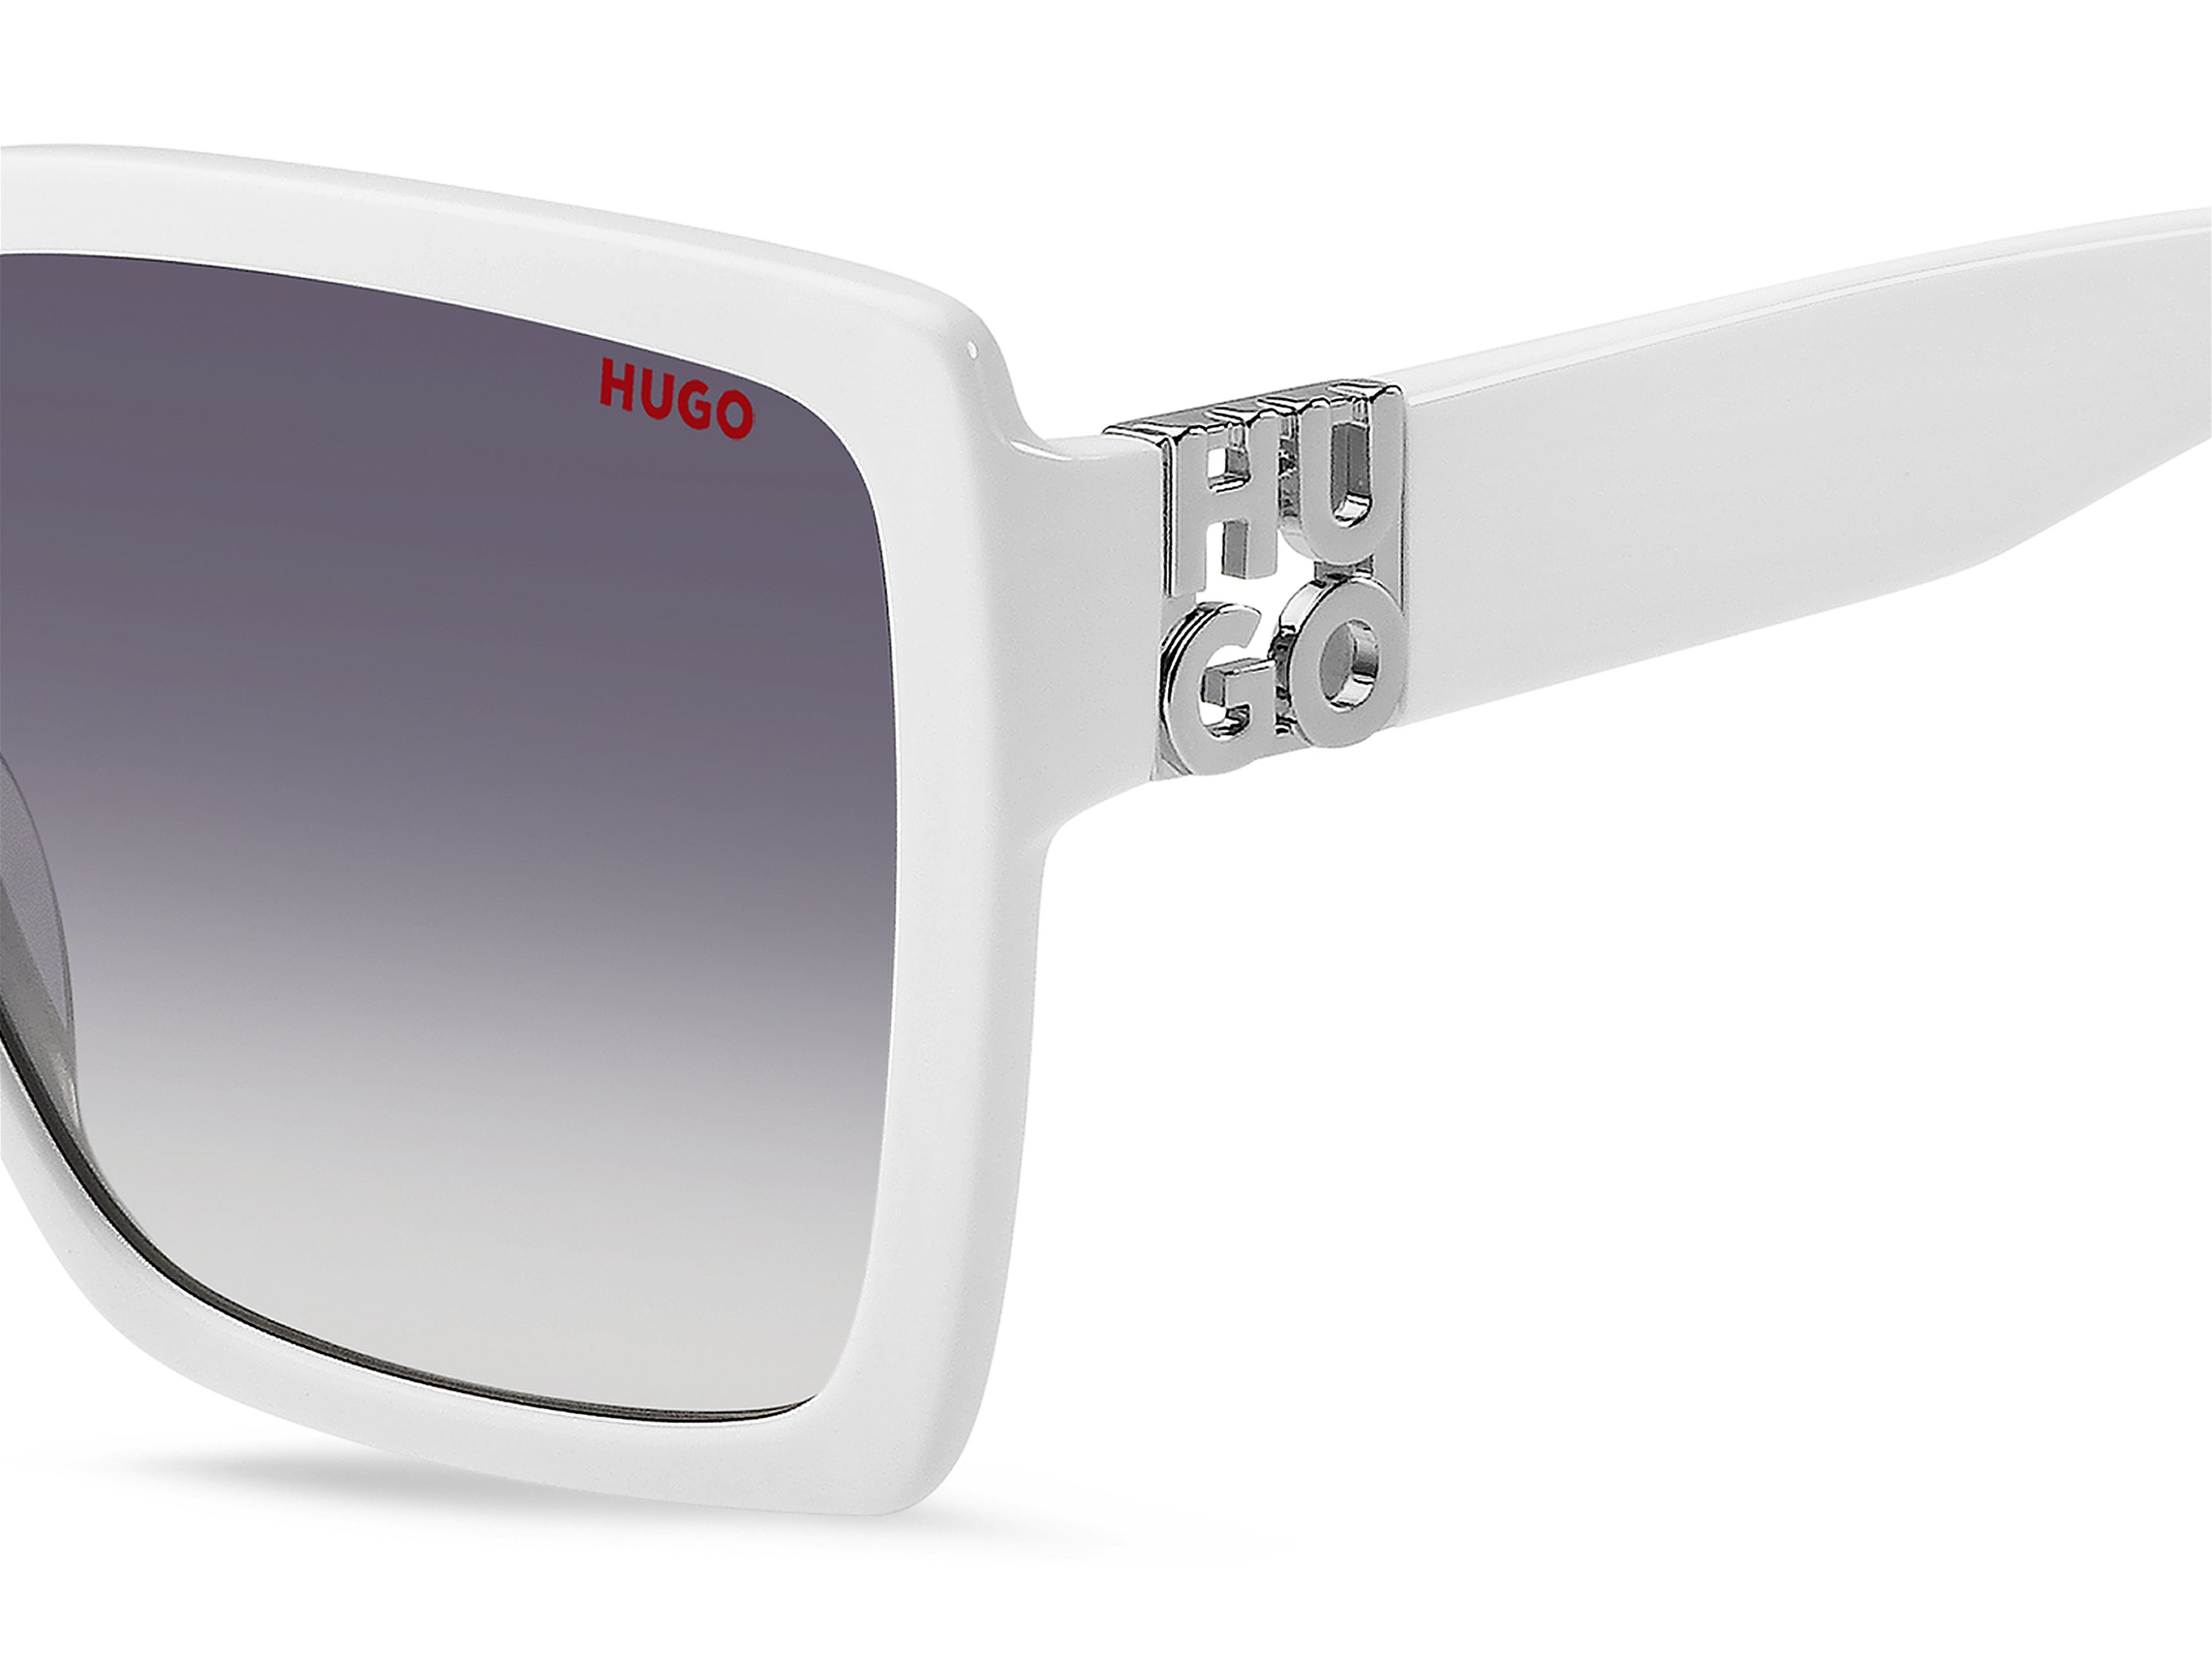 Das Bild zeigt die Sonnenbrille HG1285/S VK6 von der Marke Hugo in weiß.